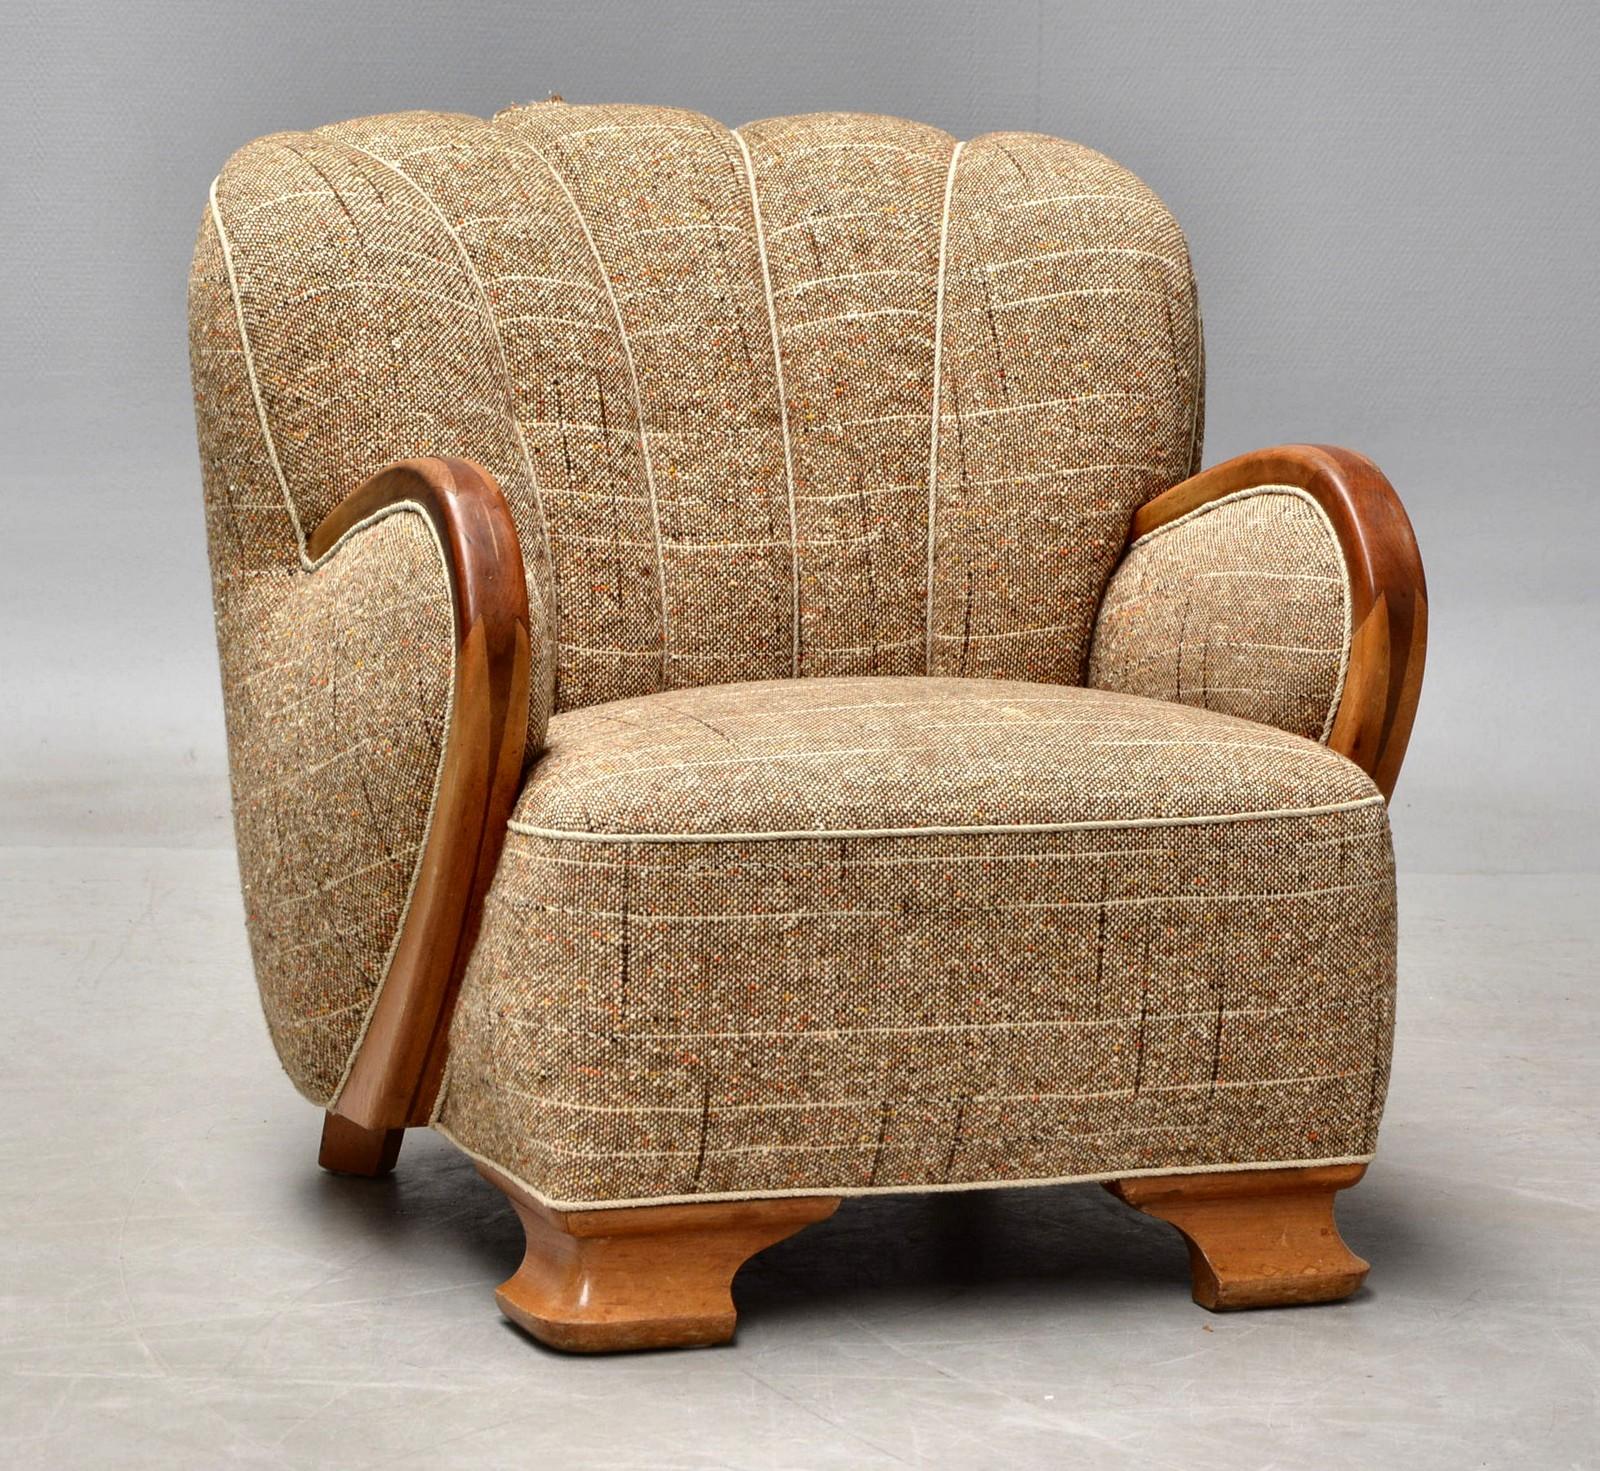 Fantastischer Sessel aus den 1930er-1940er Jahren im Stil von Mogens Lassen aus der Zeit des späten Art déco und der frühen Mitte des Jahrhunderts. Mit seinen üppigen Proportionen und den detaillierten Holzarbeiten aus Ulme und Mahagoni ist er ein